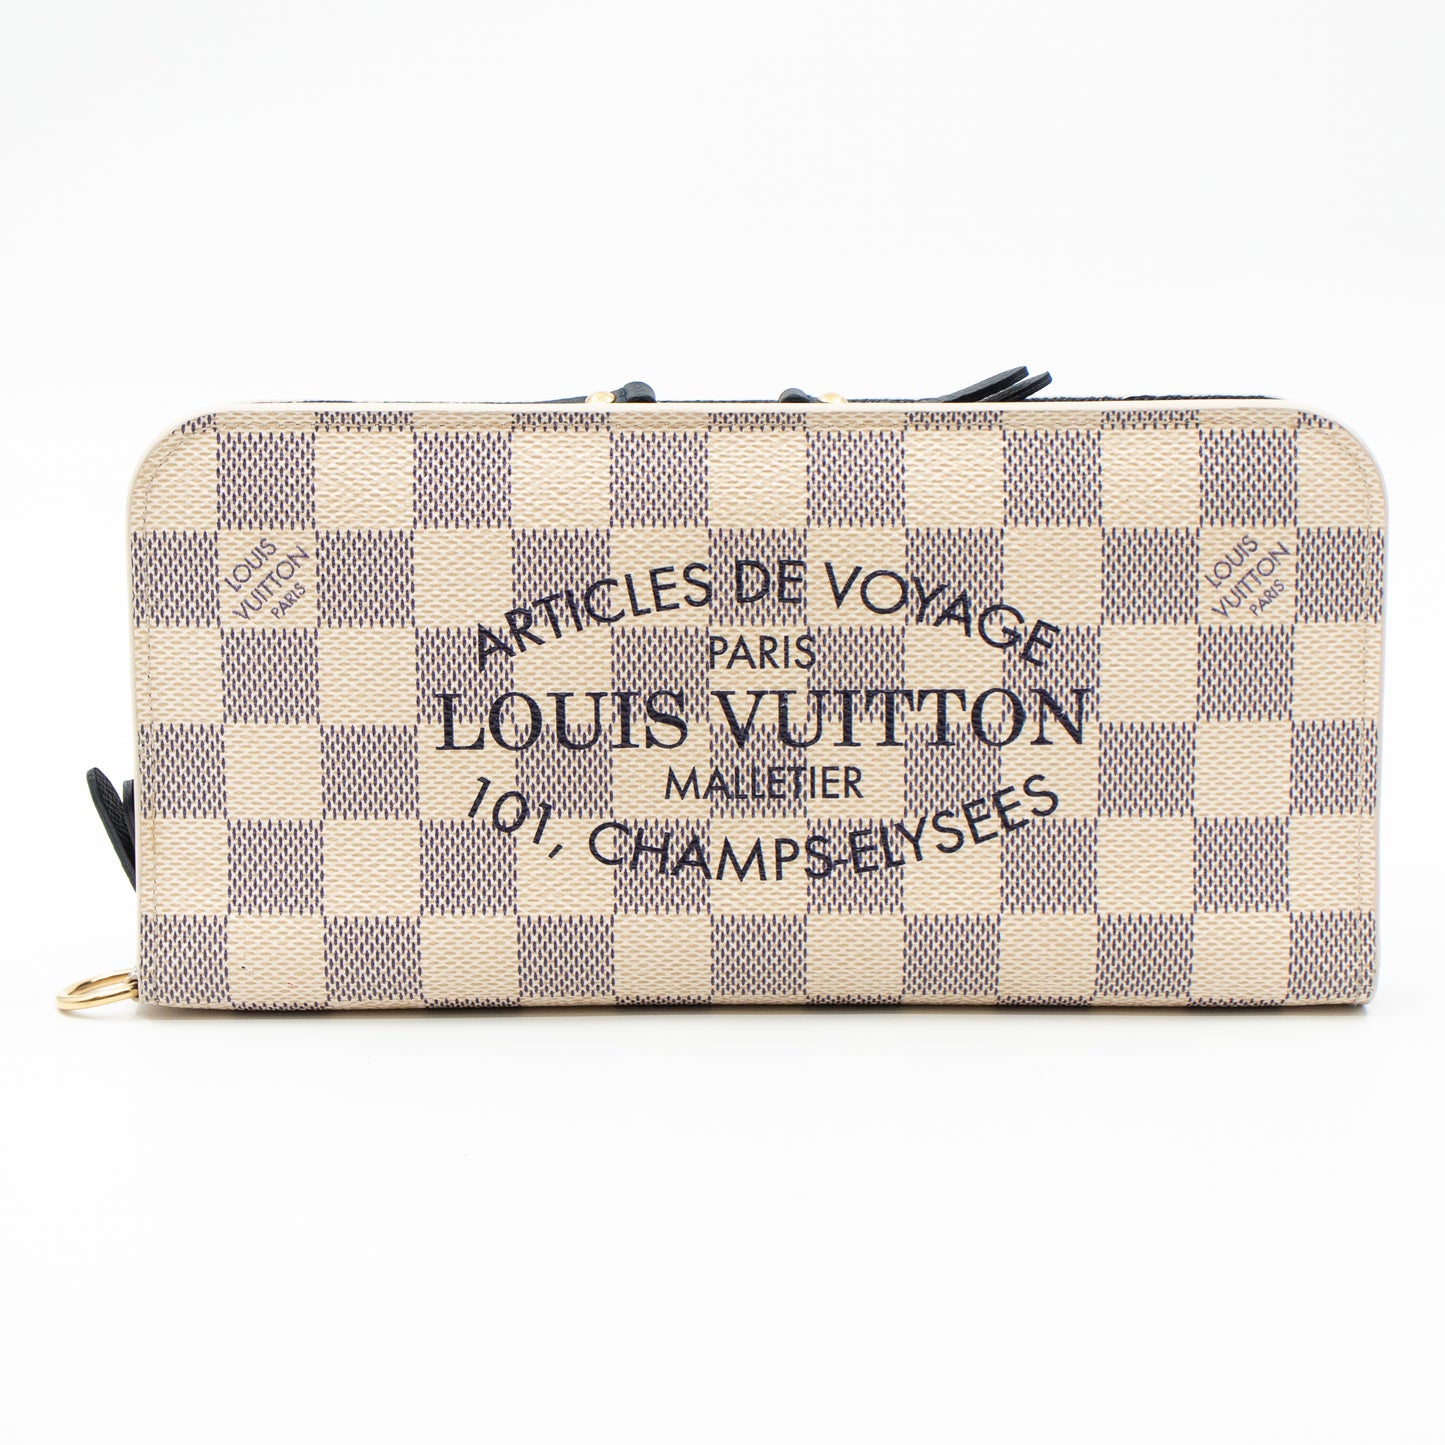 LOUIS VUITTON Damier Azur Articles de Voyage Insolite Wallet